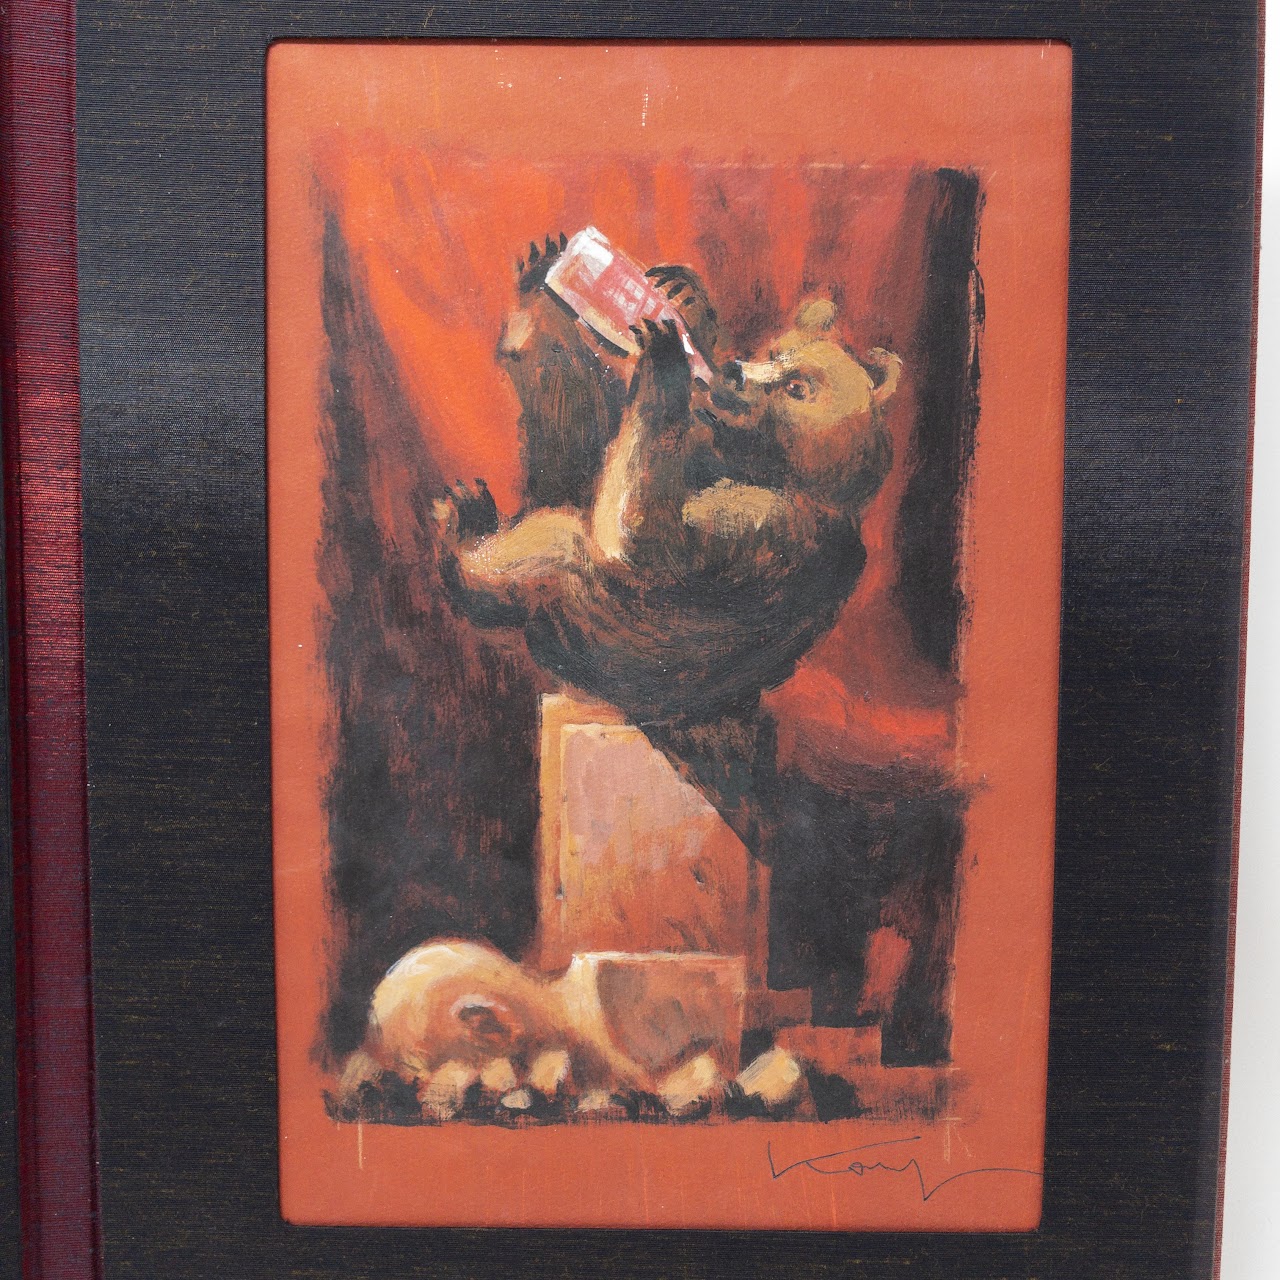 Vitaly Komar: The Bear Artwork Pair In Folder